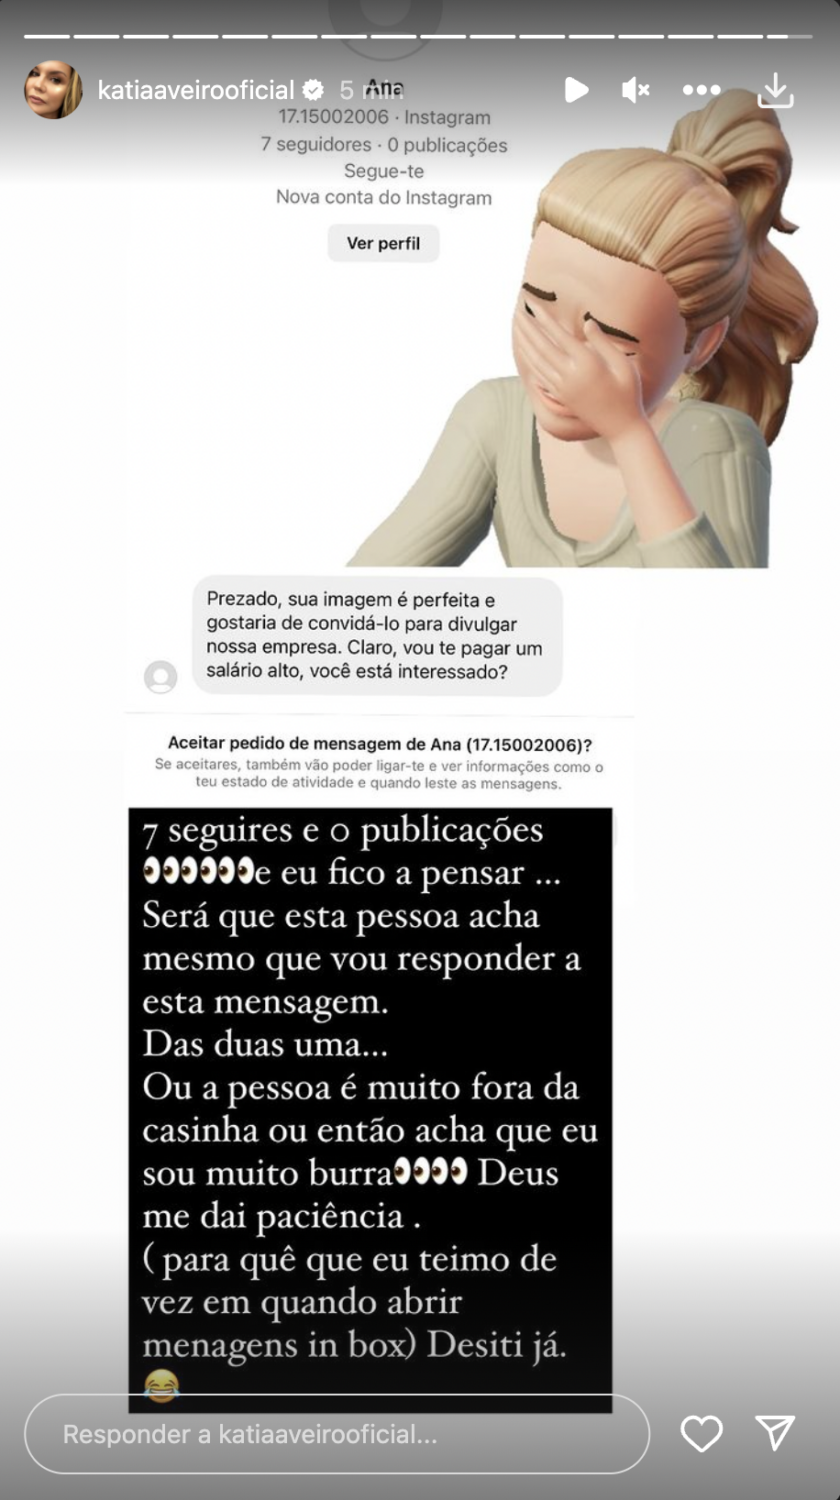 Katia Aveiro reage após mensagem &#8216;suspeita&#8217;: &#8220;Acha que sou burra. Deus me dê paciência&#8221;